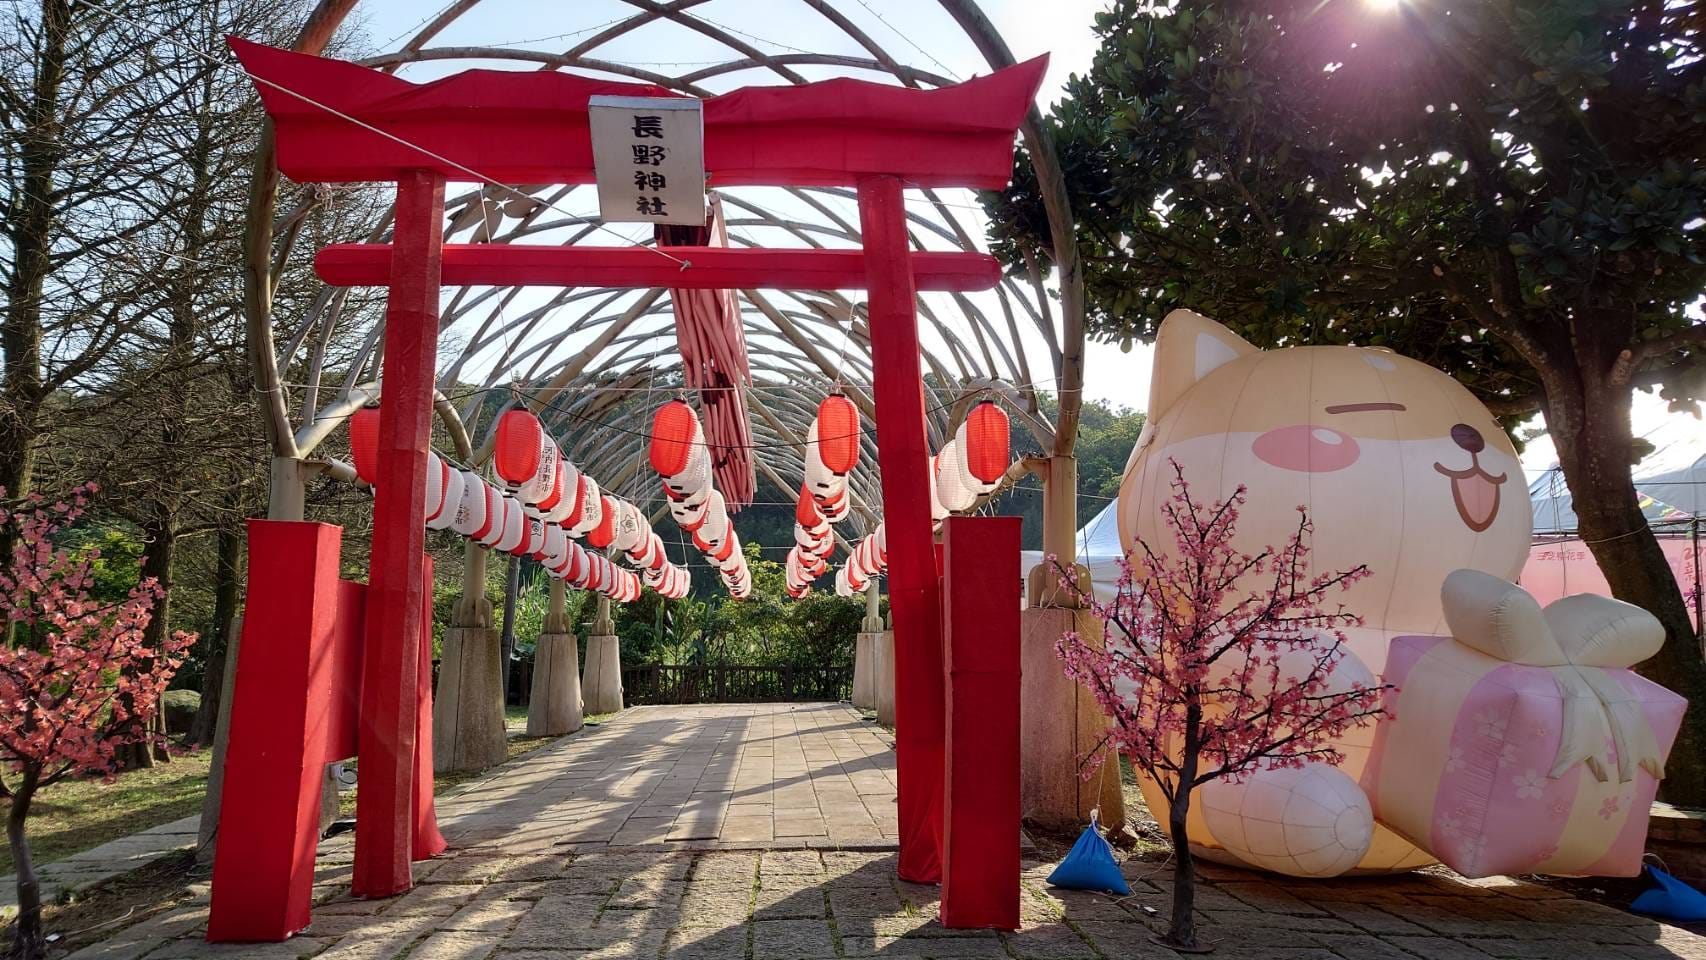 櫻花季活動現場設置日式鳥居及柴犬裝置玩偶供民眾拍照